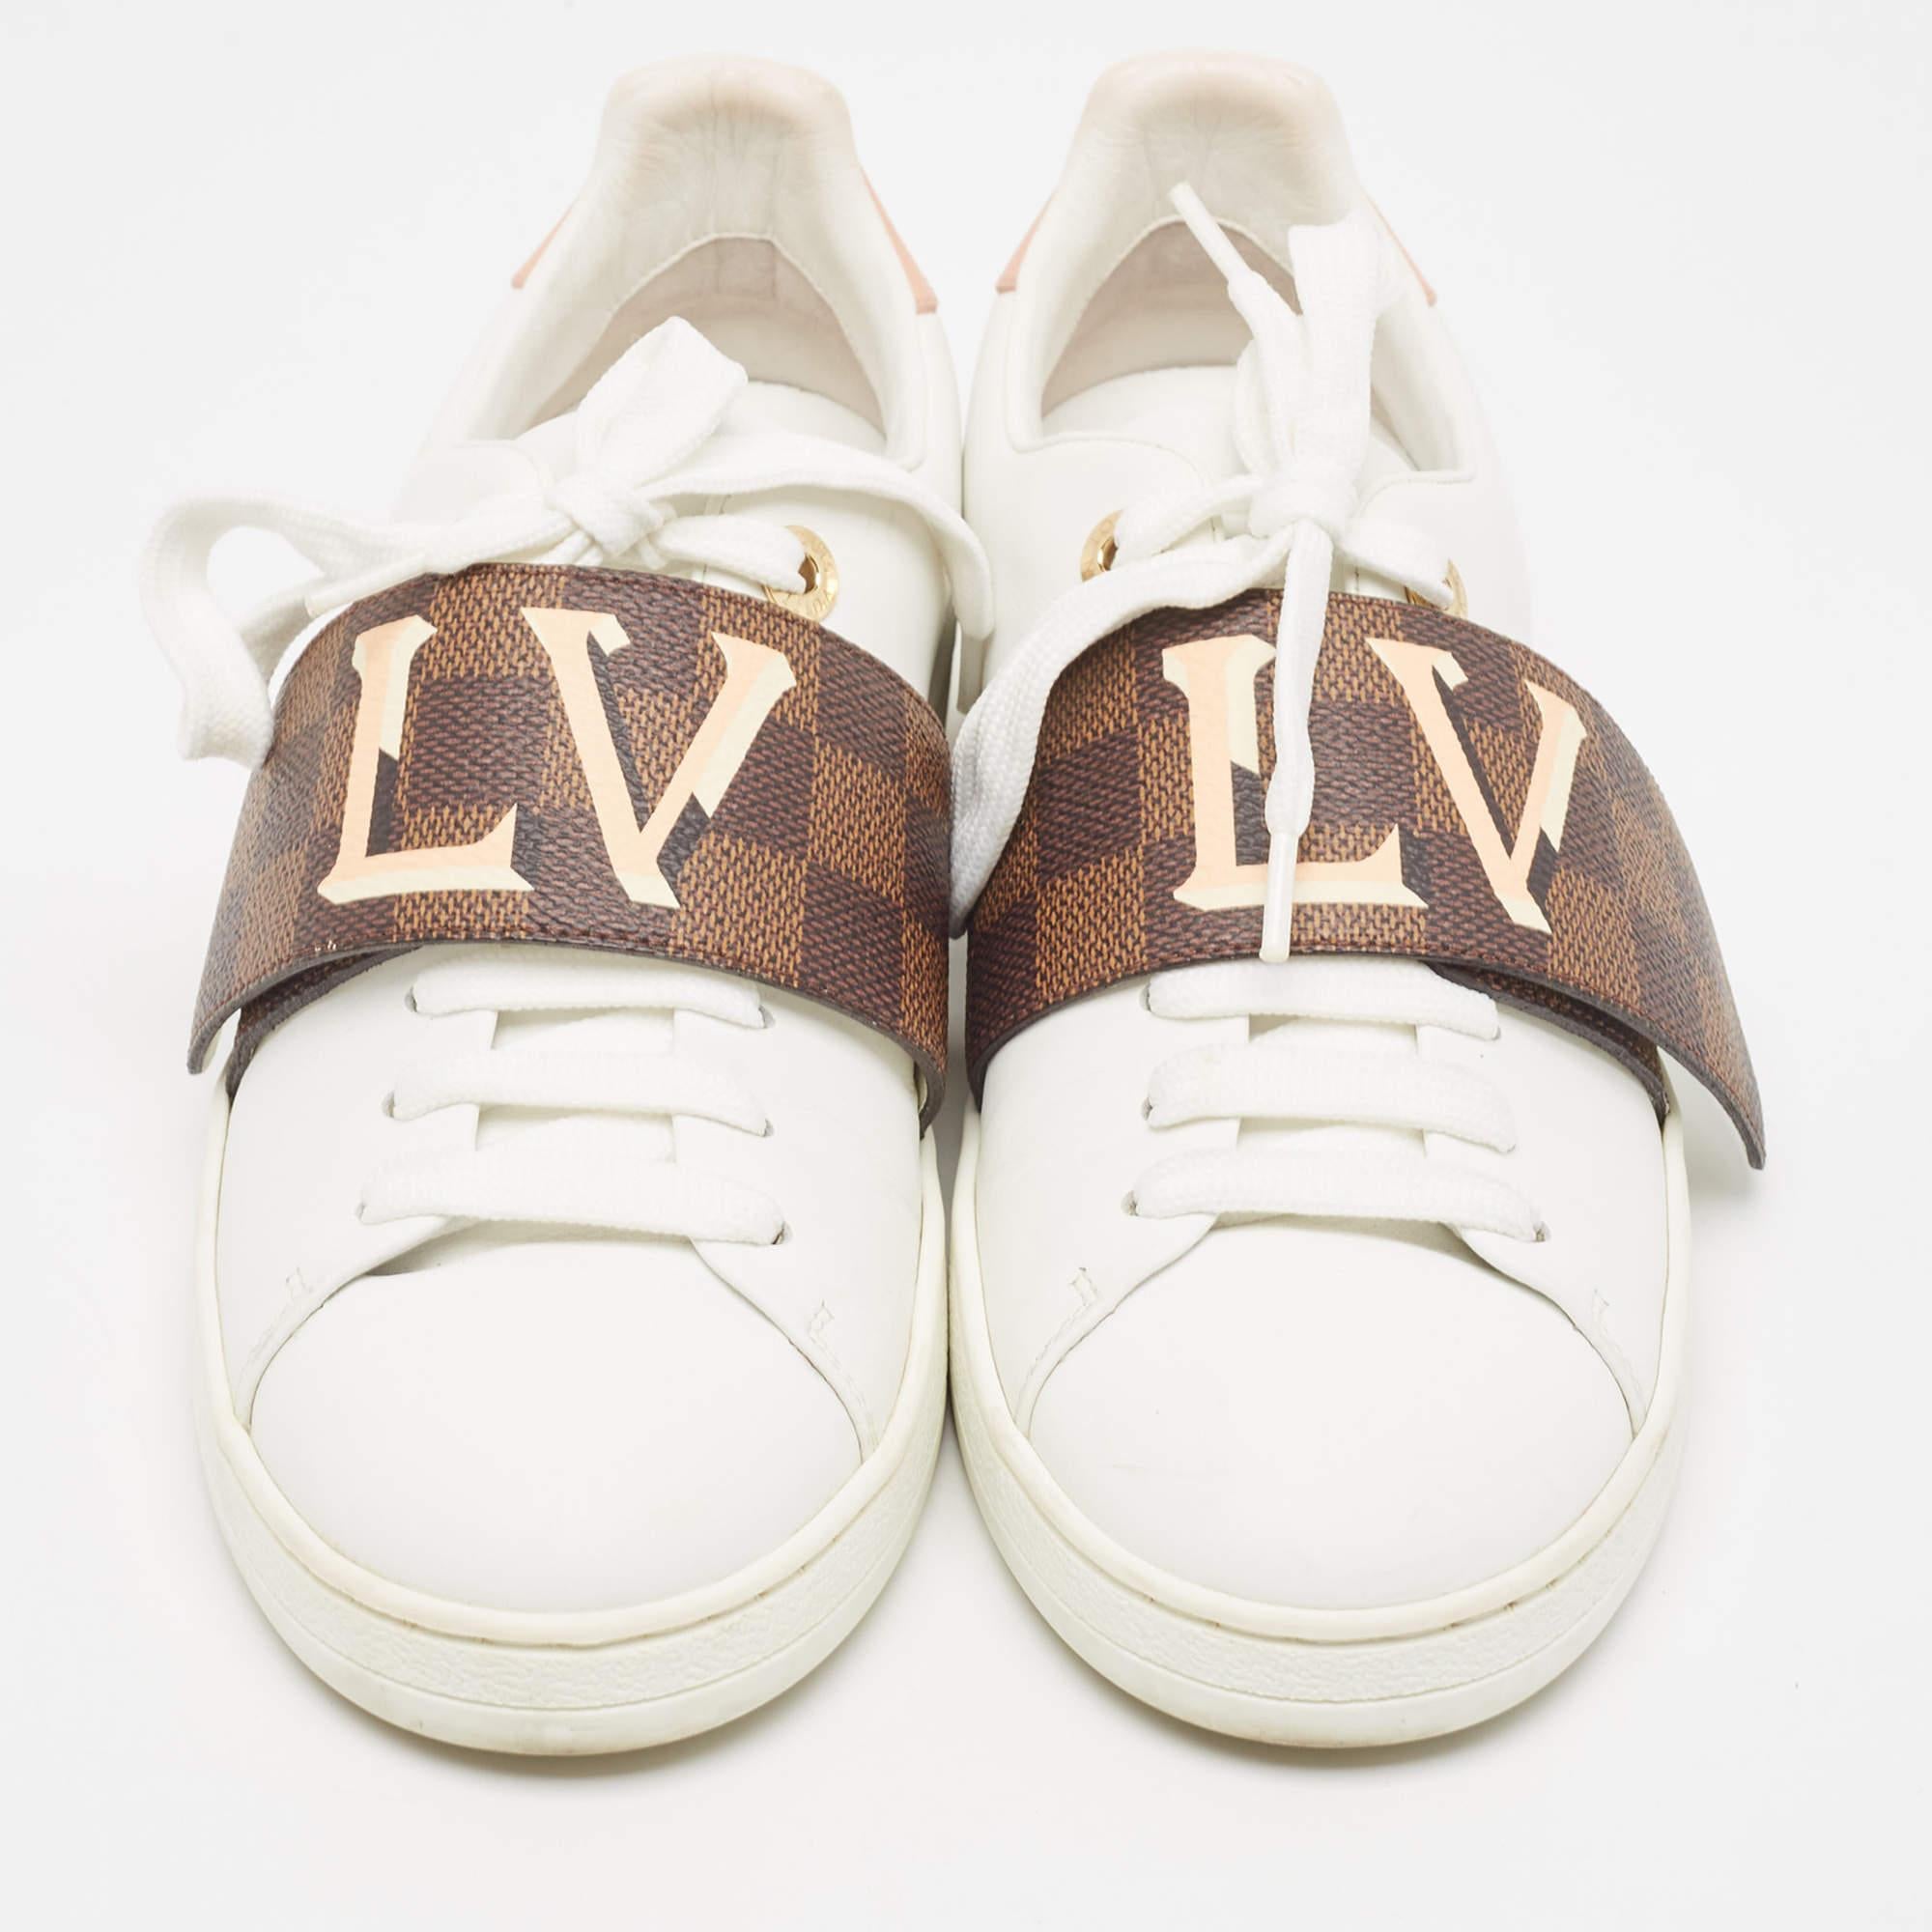 Pour rehausser votre look décontracté, ces baskets blanches Louis Vuitton sont dotées d'une bande velcro contrastante sur l'empeigne à lacets. Les étampes de la marque ajoutent une touche de luxe au design.

